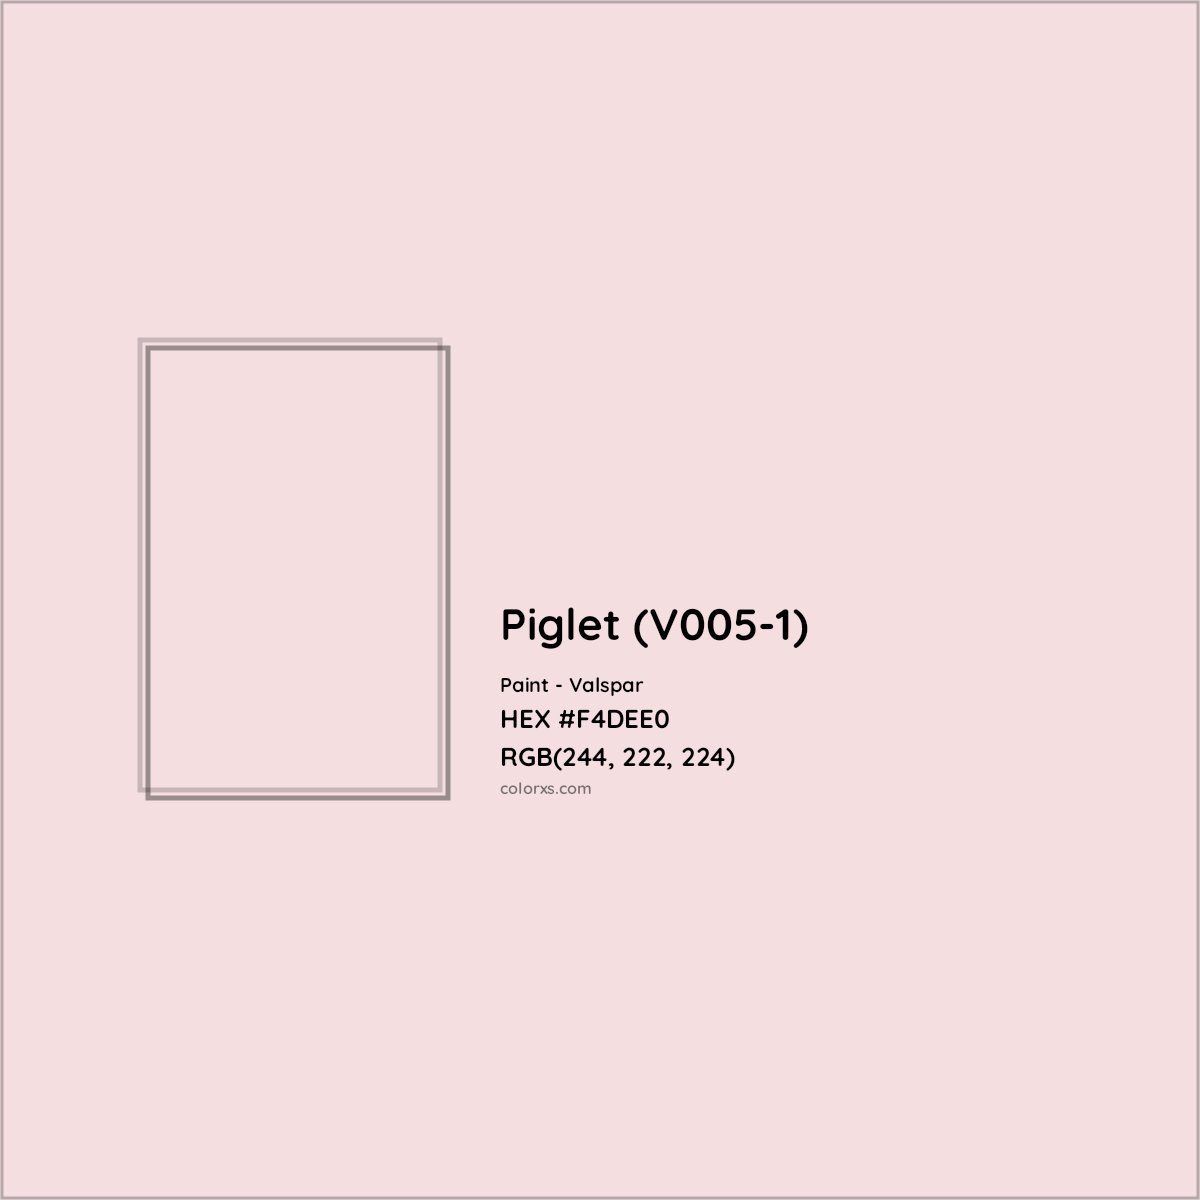 HEX #F4DEE0 Piglet (V005-1) Paint Valspar - Color Code